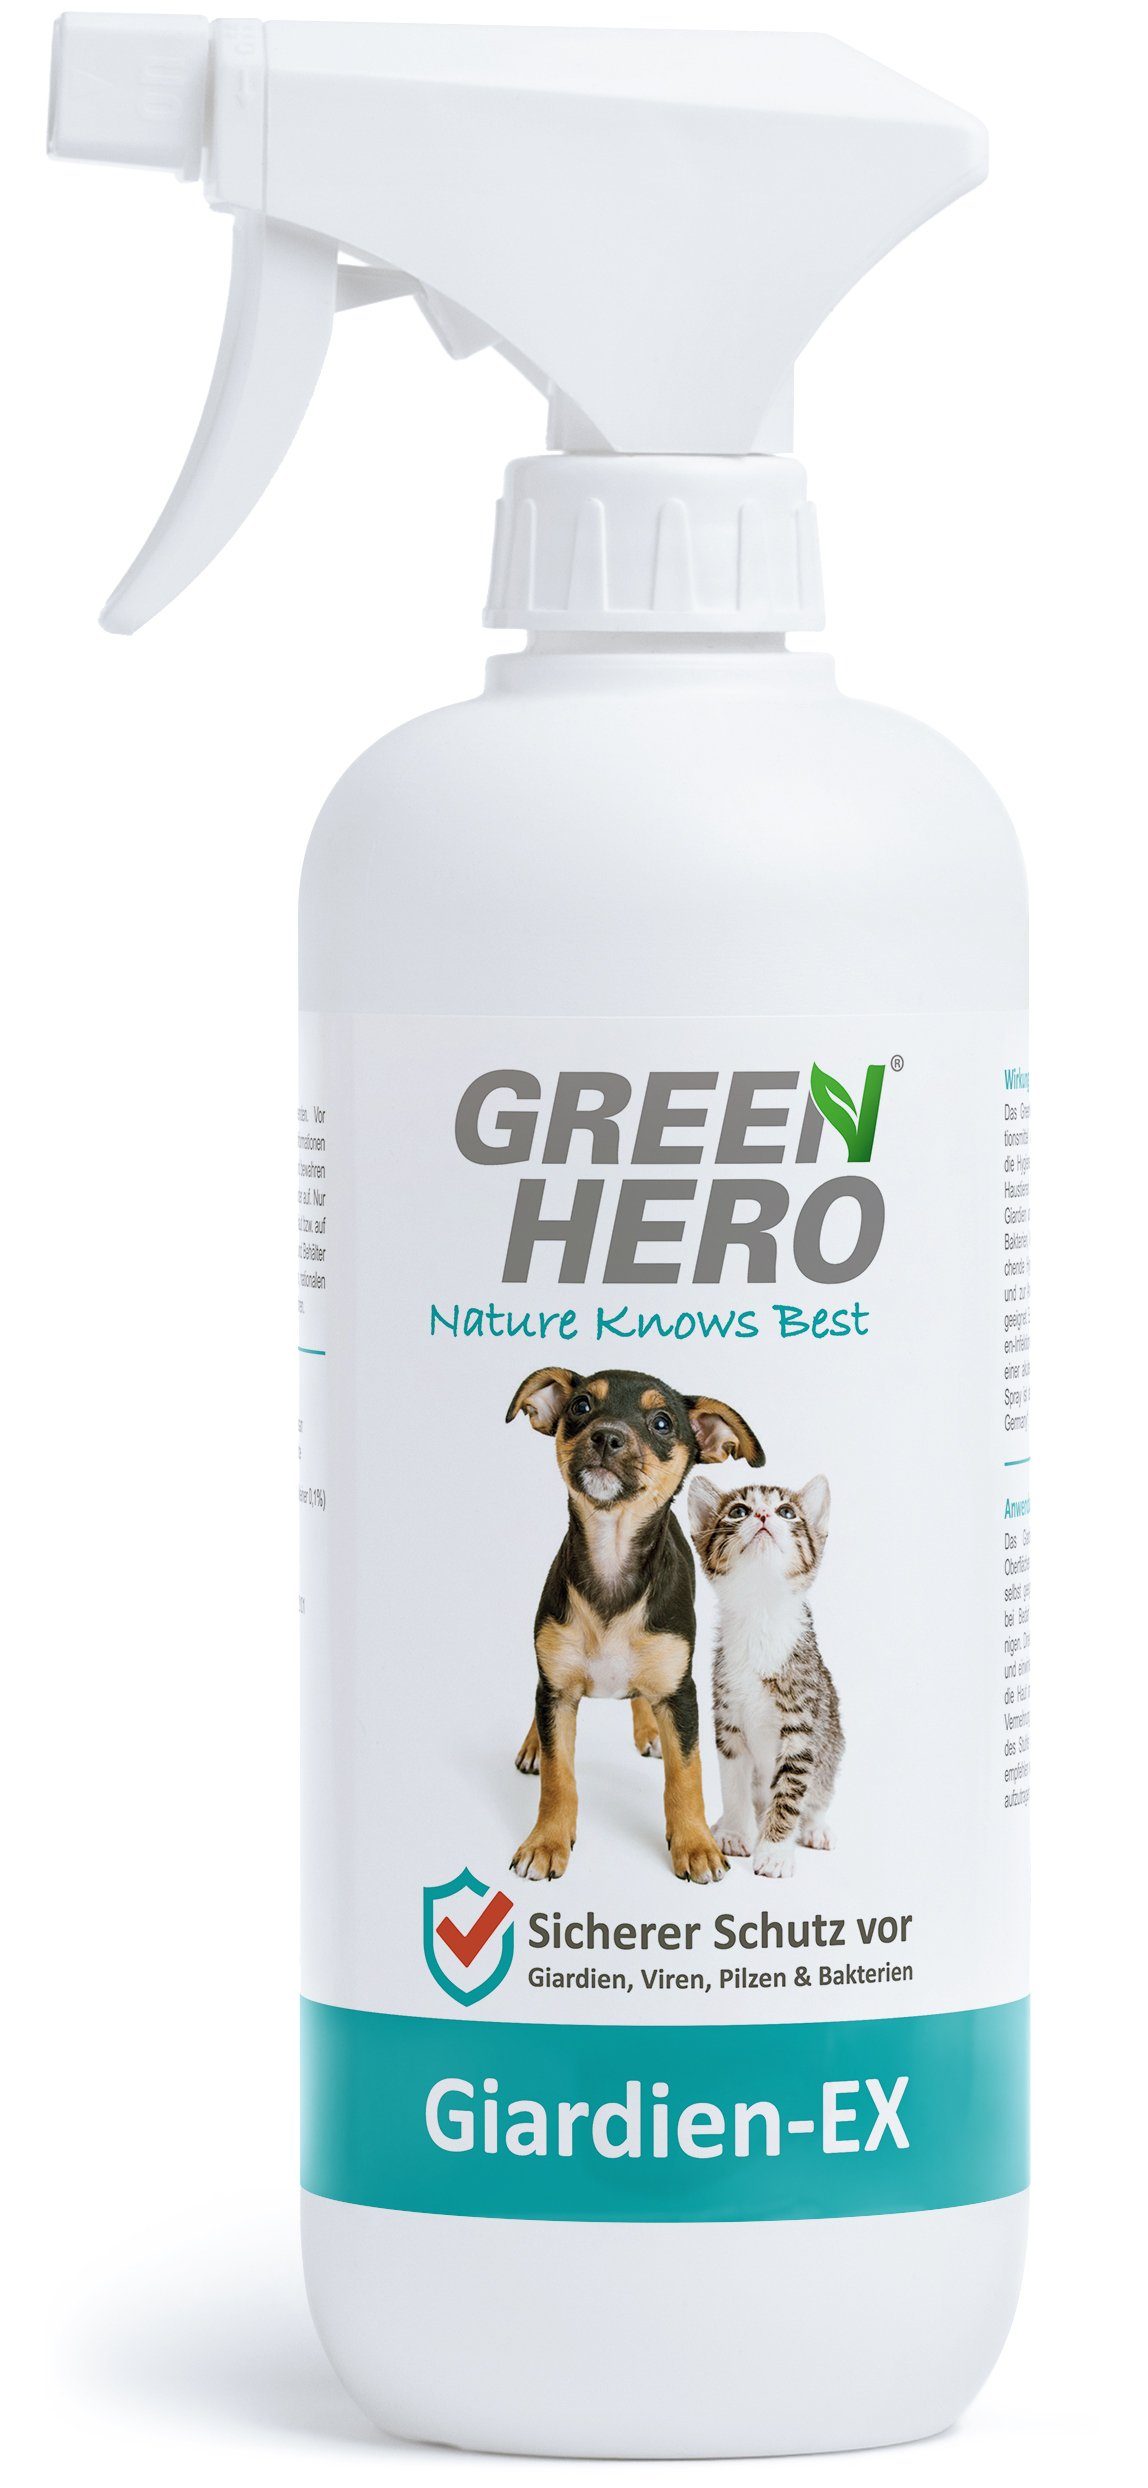 GreenHero Fellpflege Giardien-Ex schützt Hund & Katze vor Bakterien, Viren  & Pilzen, 500 ml